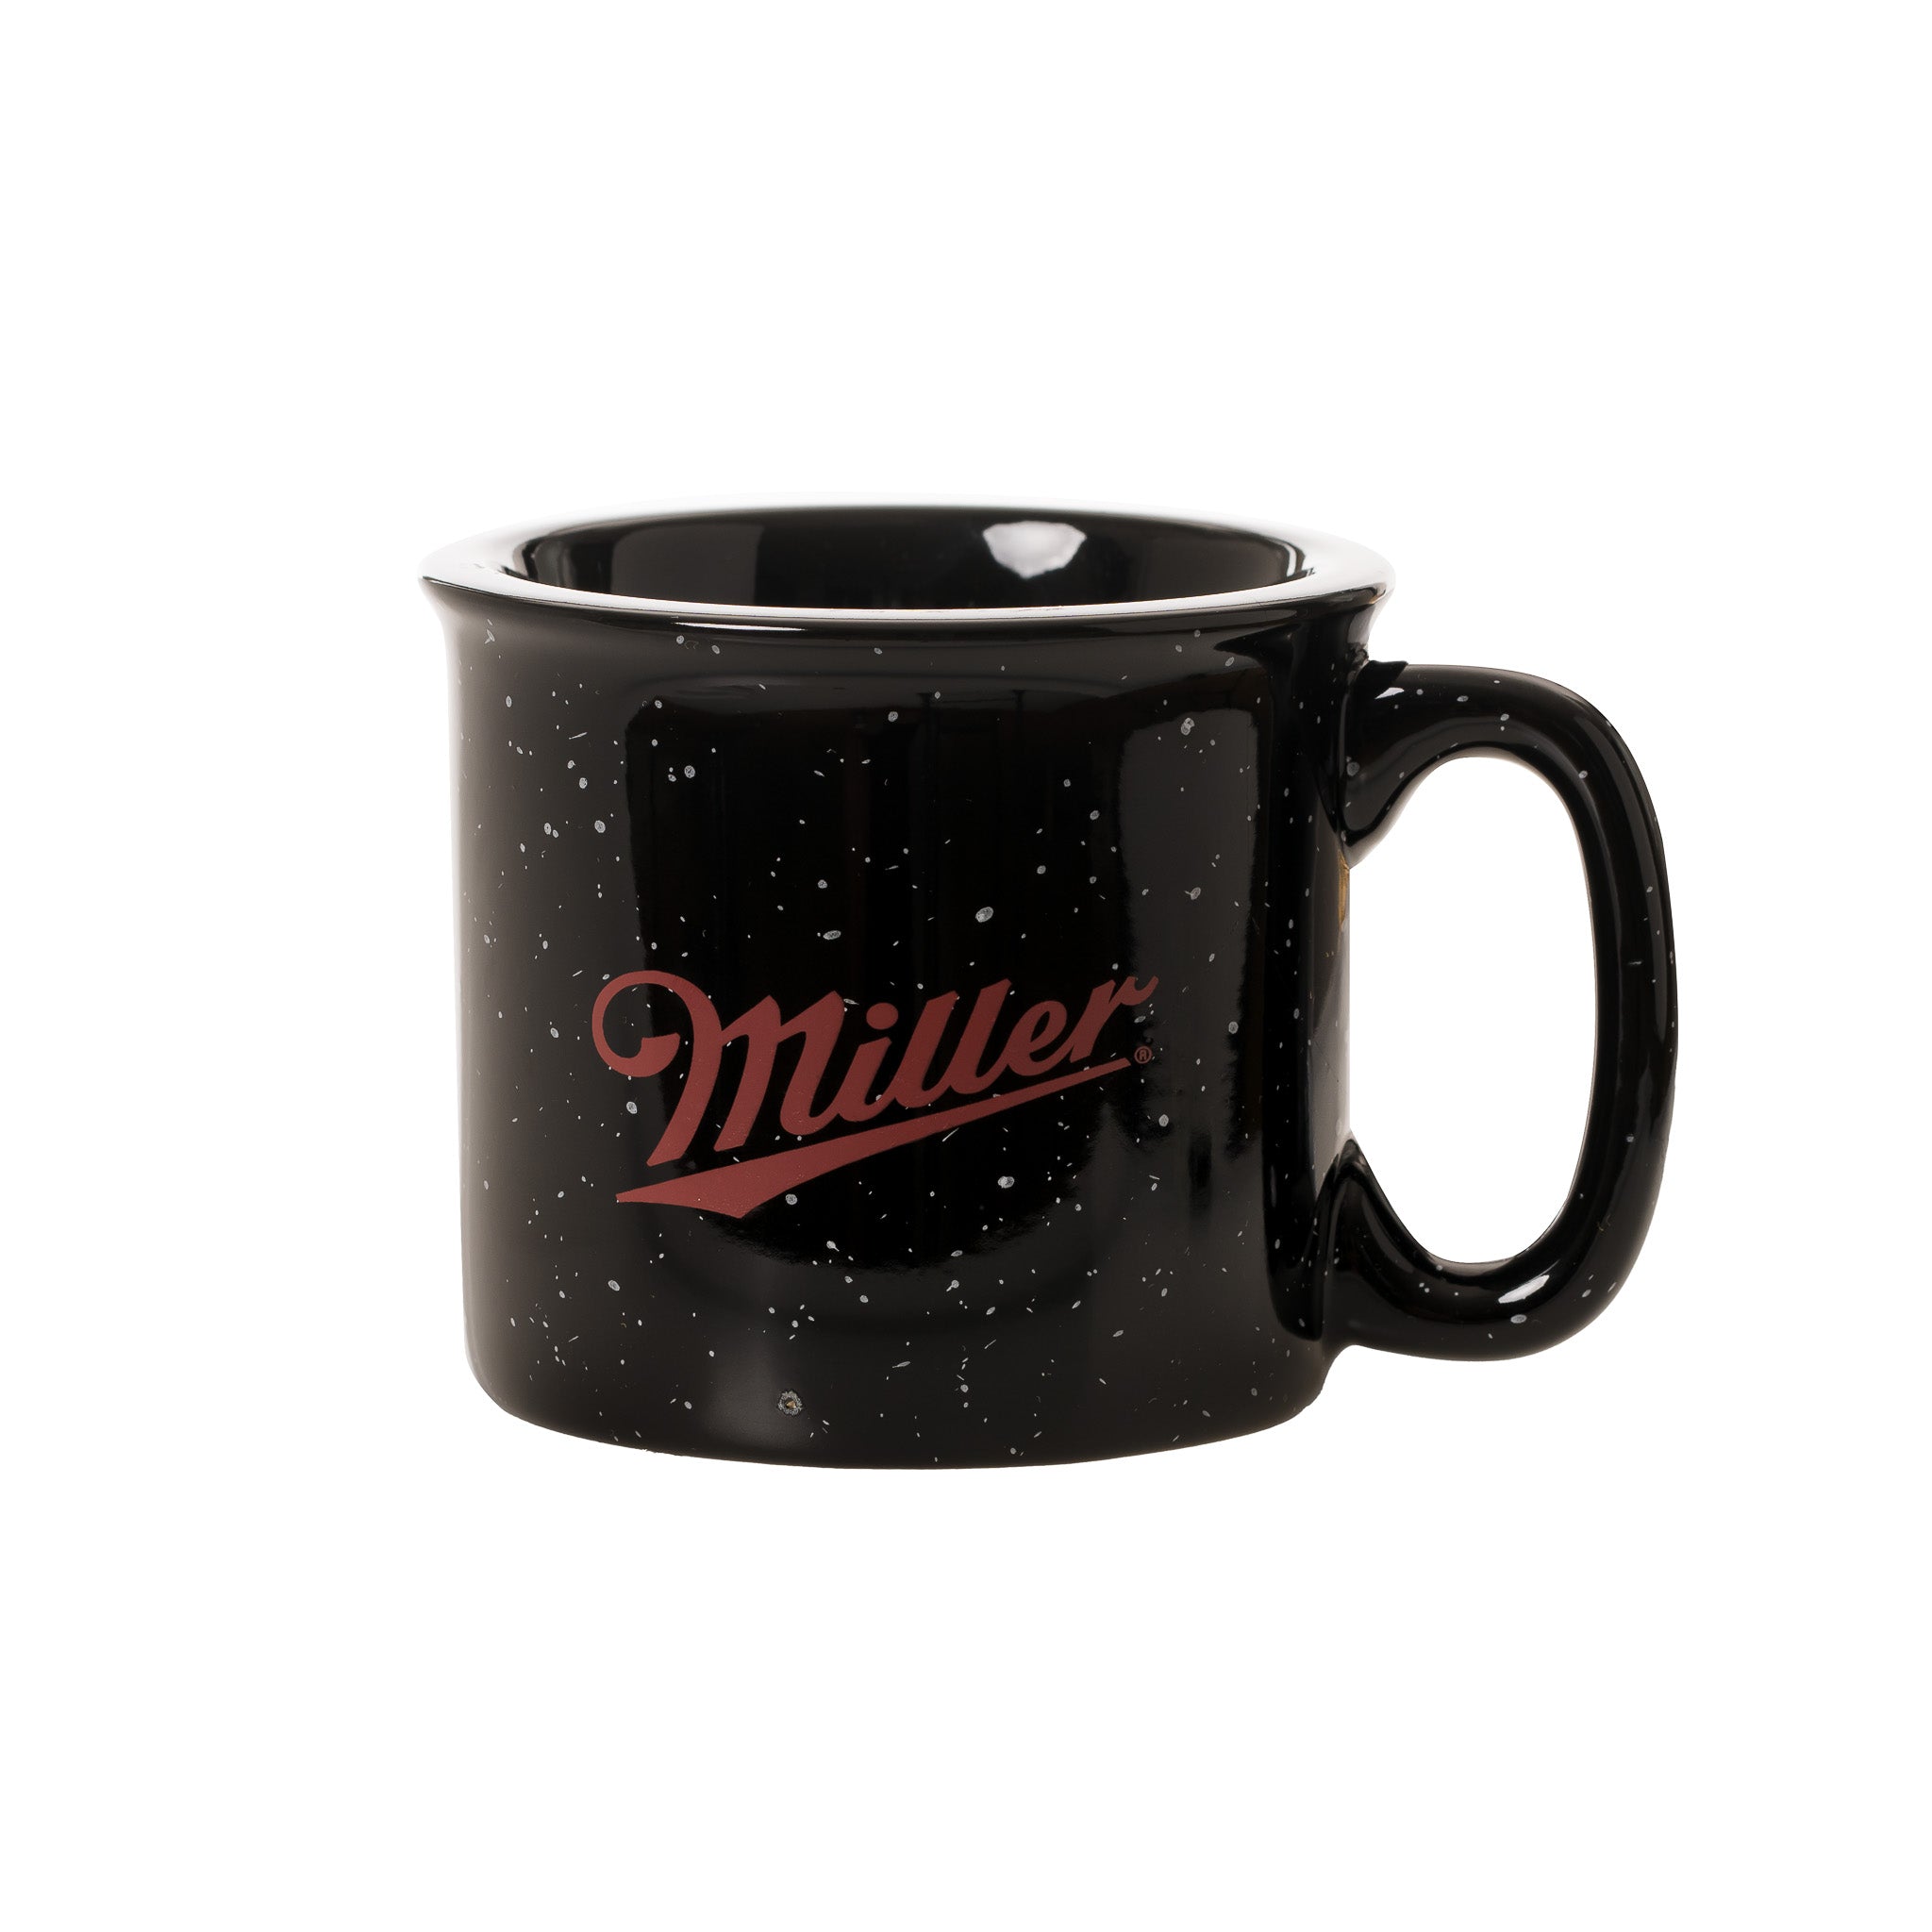 MILLER SCRIPT BLACK CERAMIC MUG – Shop Miller Brewing